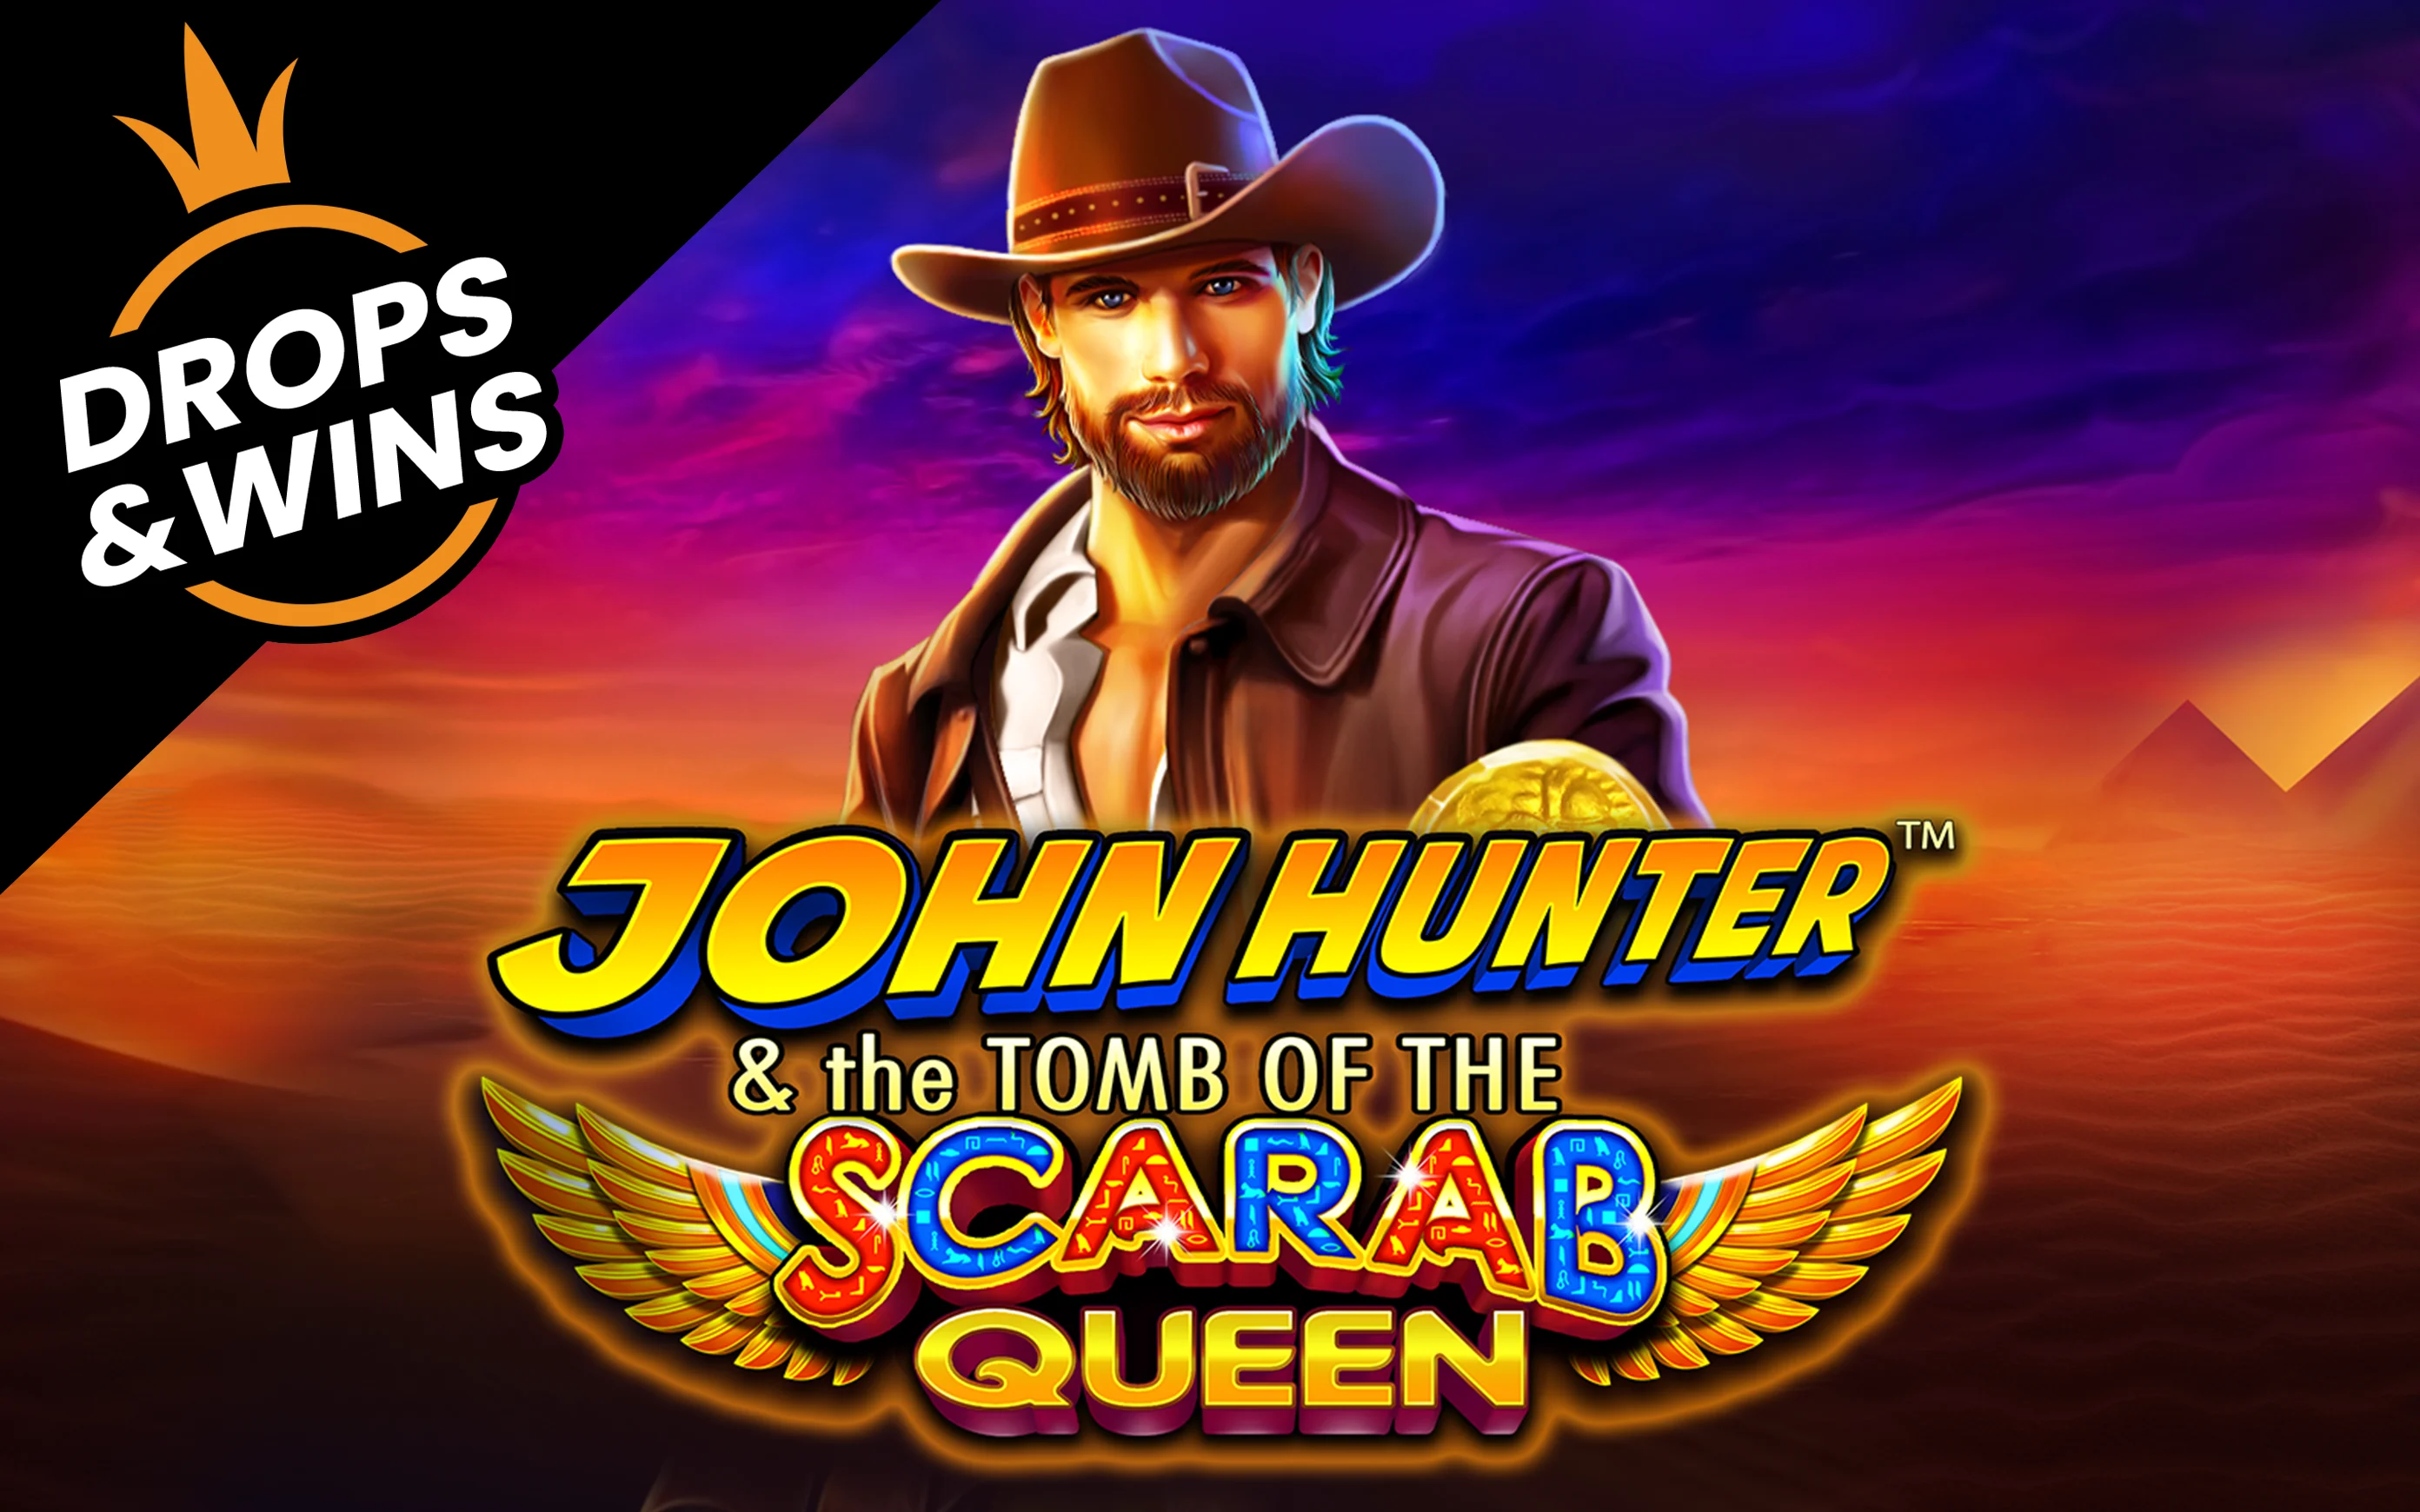 เล่น John Hunter and the Tomb of the Scarab Queen™ บนคาสิโนออนไลน์ Starcasino.be